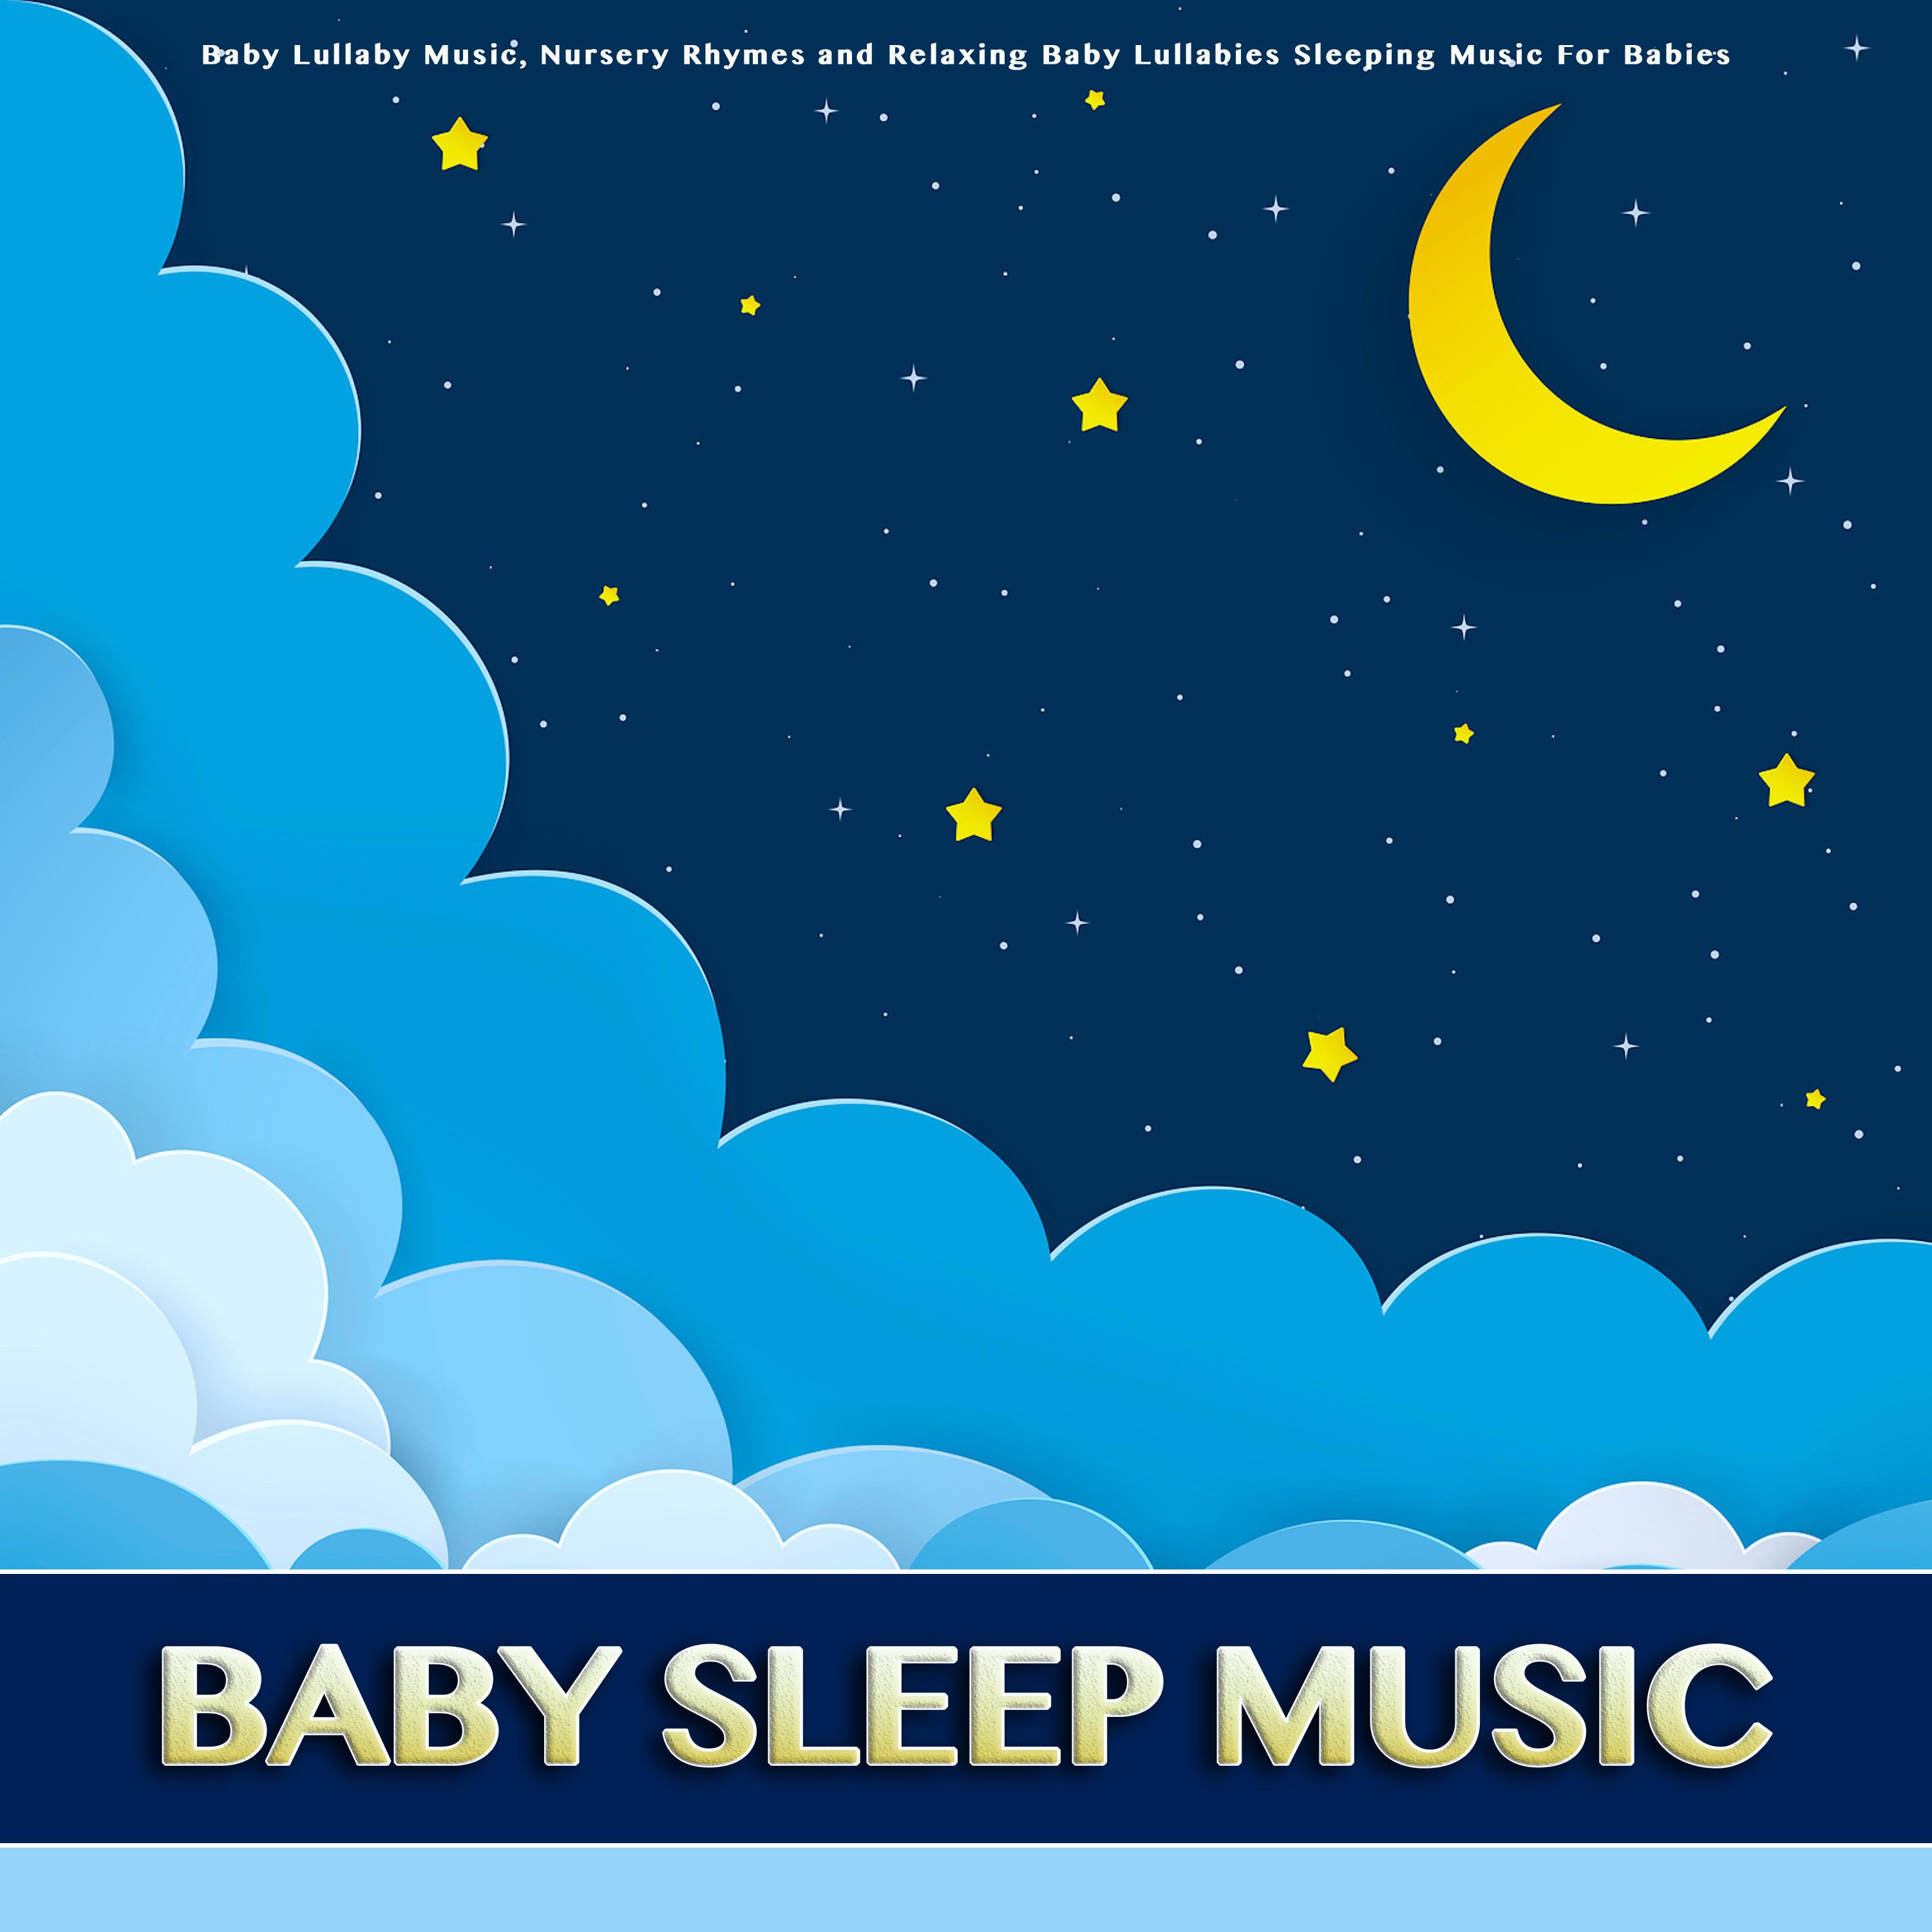 Three Blind Mice - Baby Sleep Music - Baby Lullabies - Nursery Rhymes